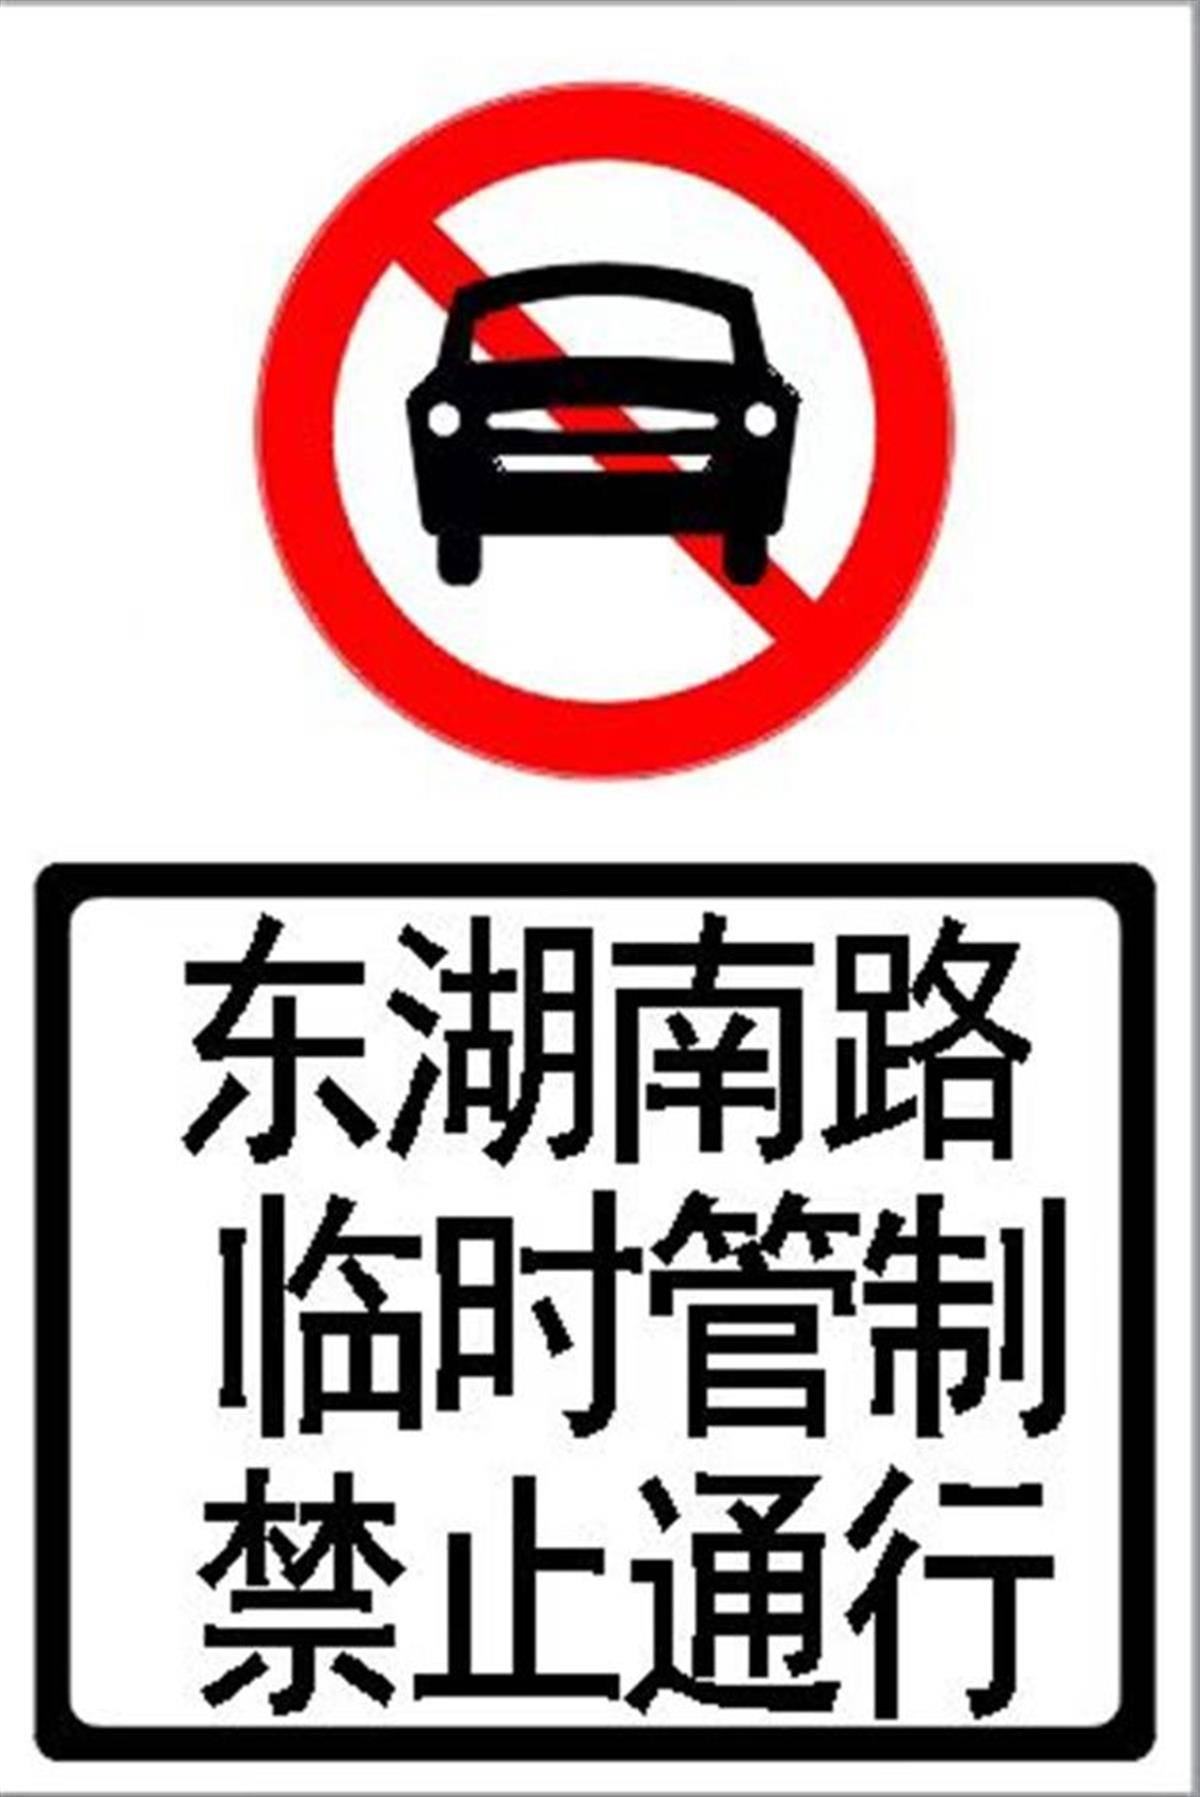 武汉东湖风景区部分路段因施工将限行,交管部门发布出行提示